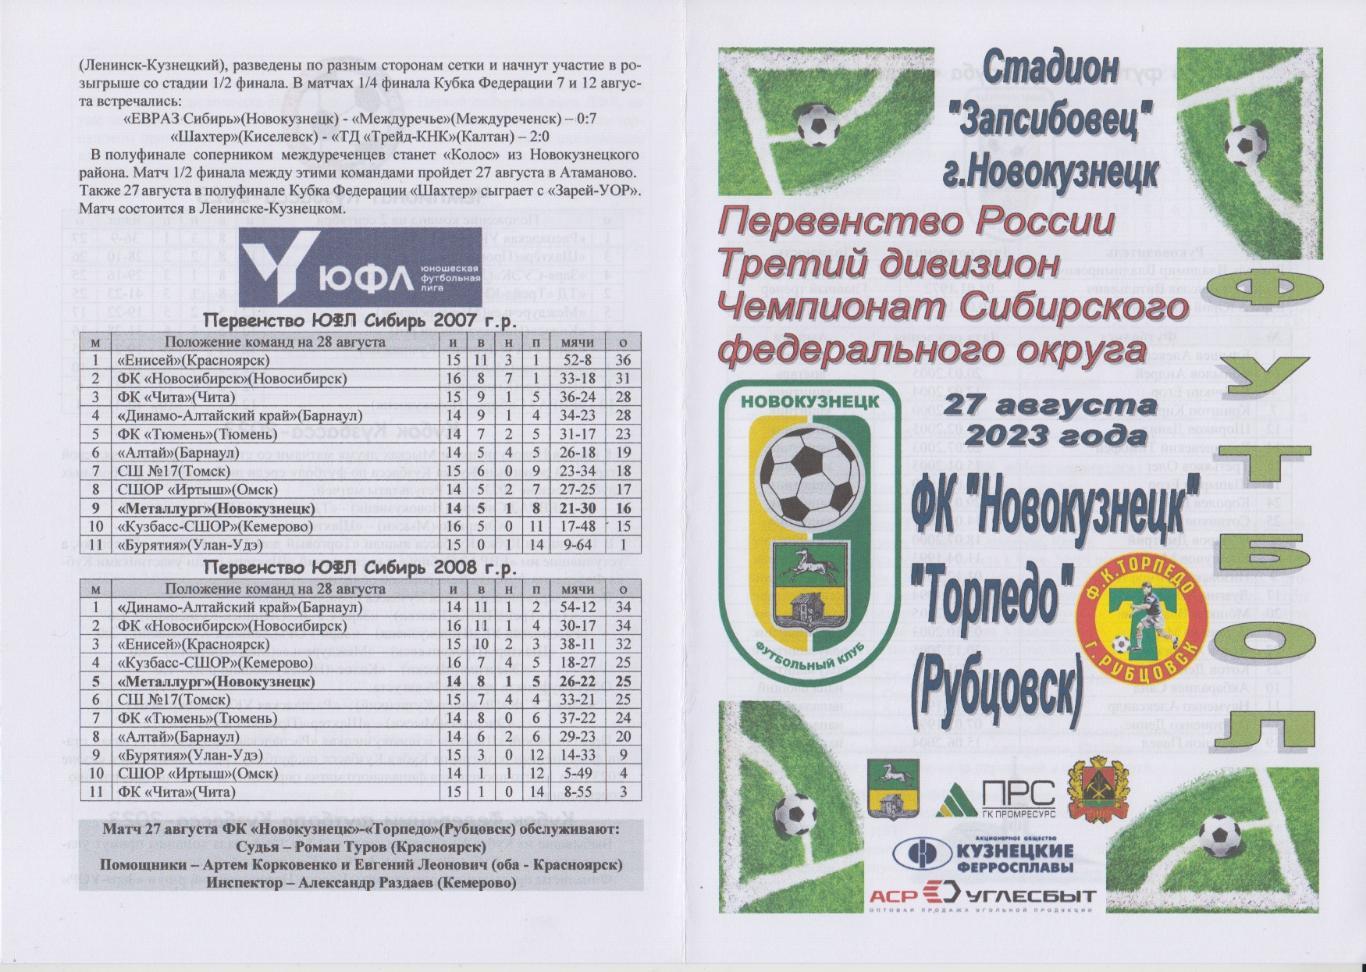 ФК Новокузнецк(Новокузнецк) - Торпедо(Рубцовск) - 2023